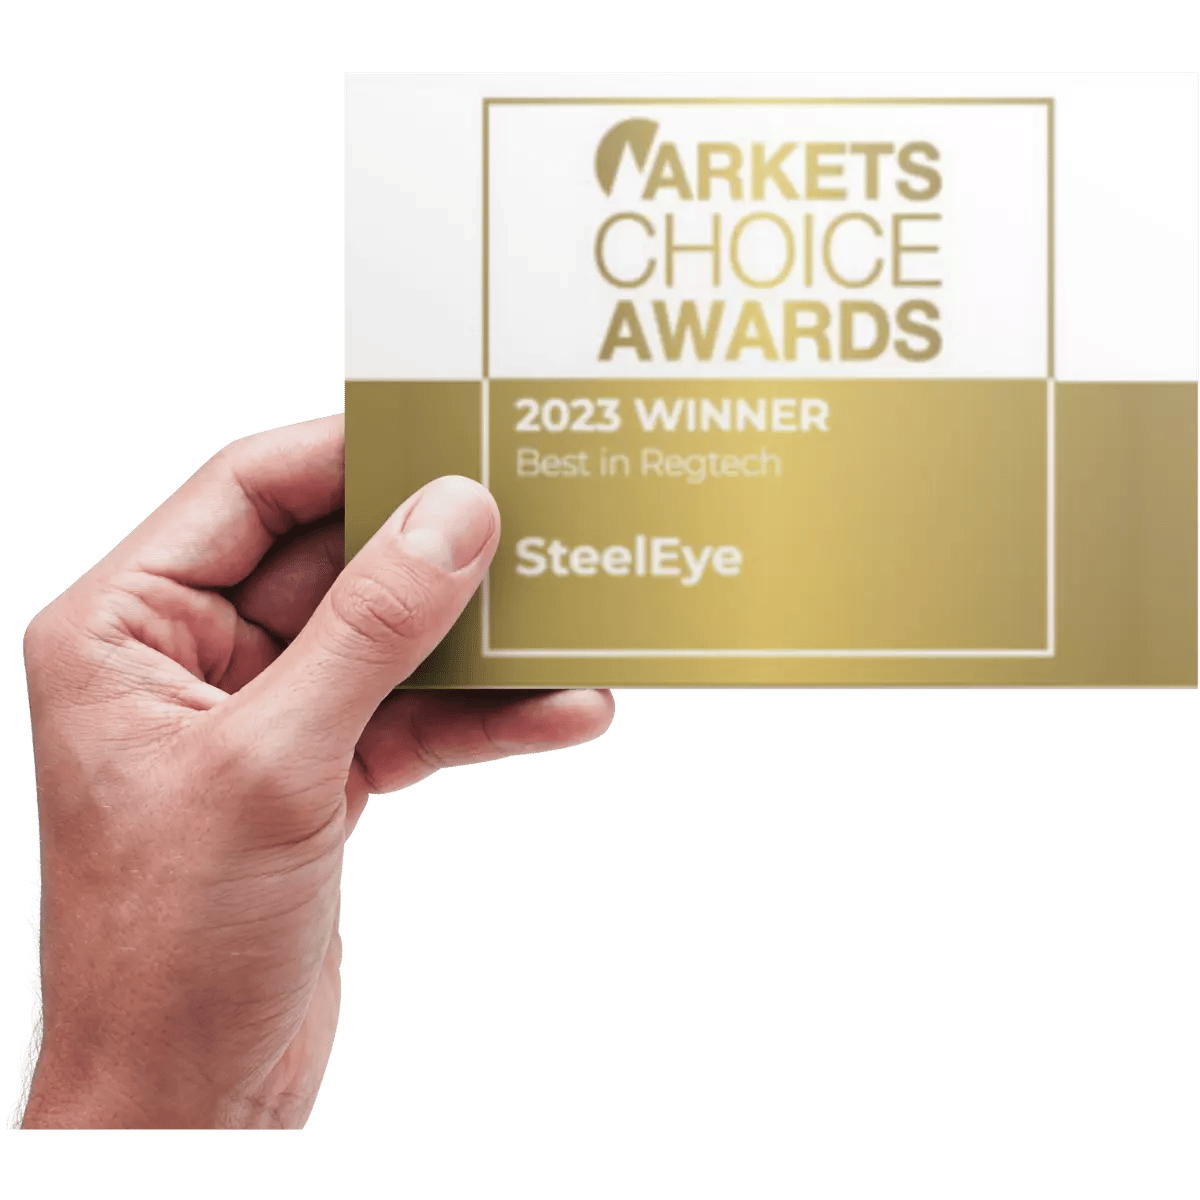 US Markets Choice Awards 2023 - Best in Regtech